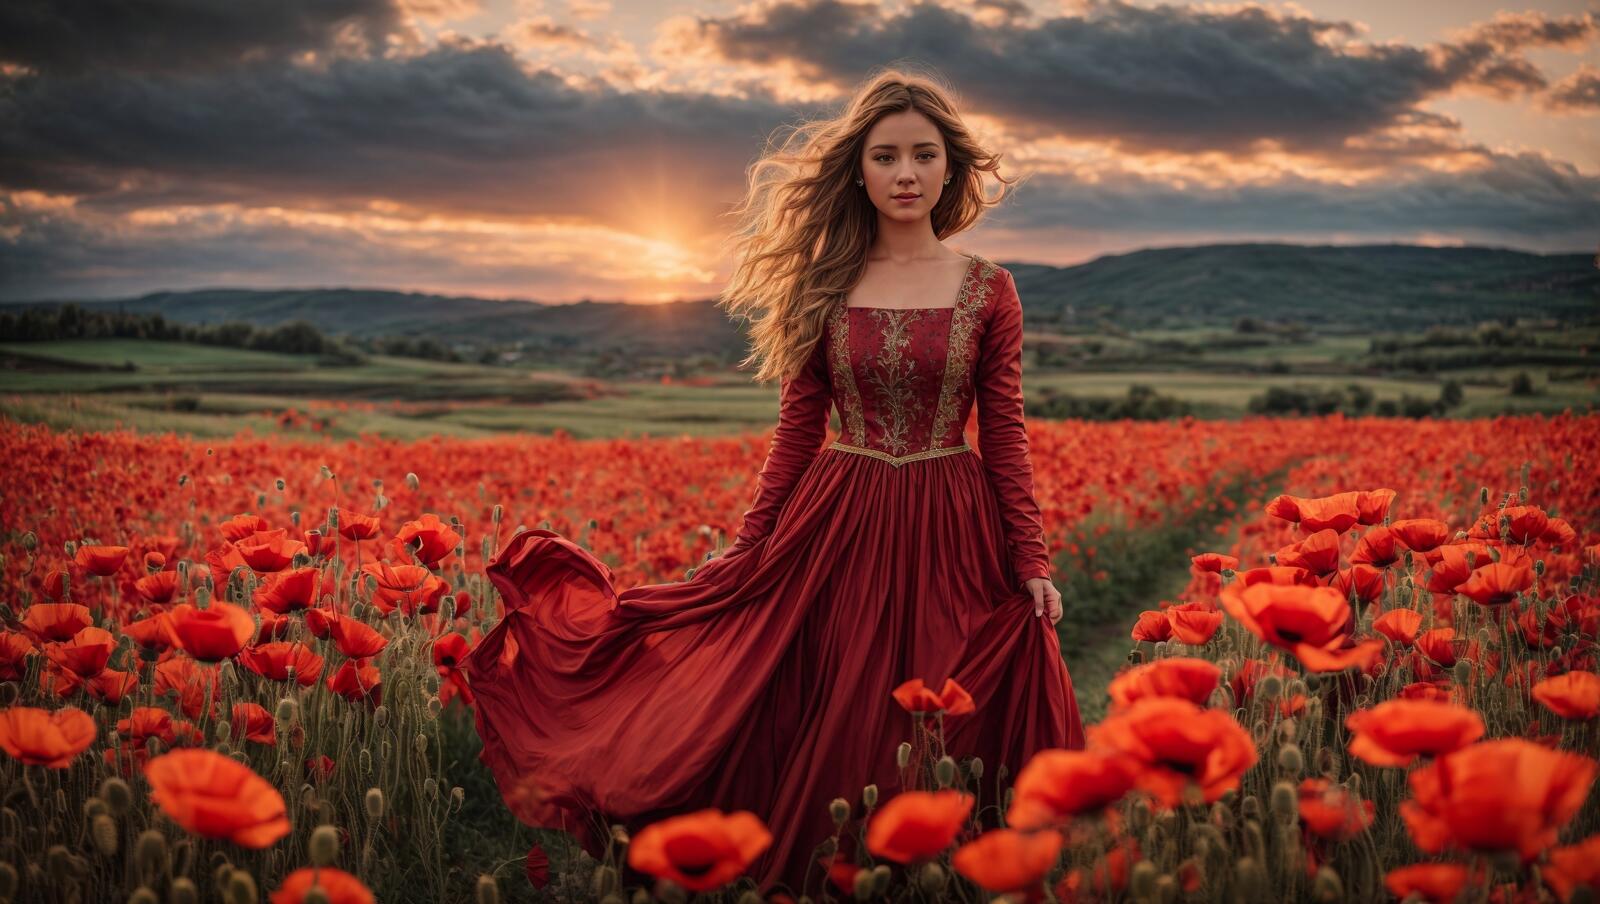 Бесплатное фото Женщина в красном платье стоит в маковом поле на закате